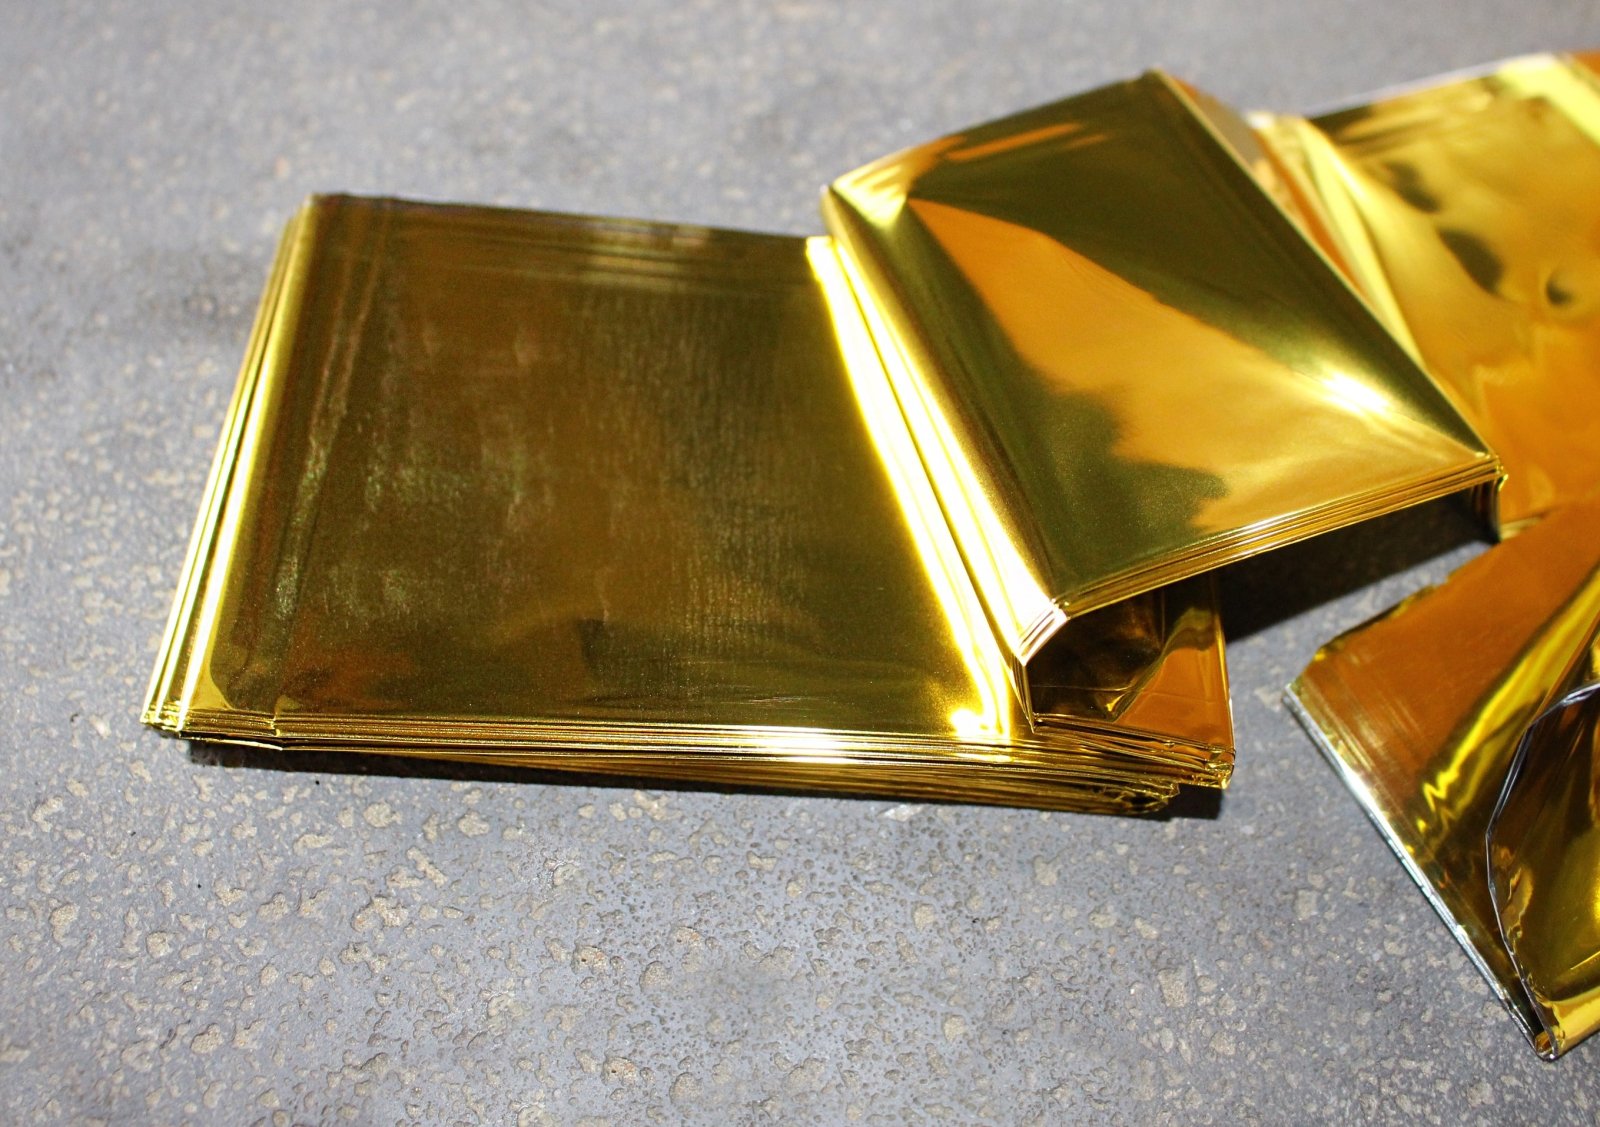 Rettungsdecke, Rettungsfolie, Farbe: gold/silber, 210 x 160cm